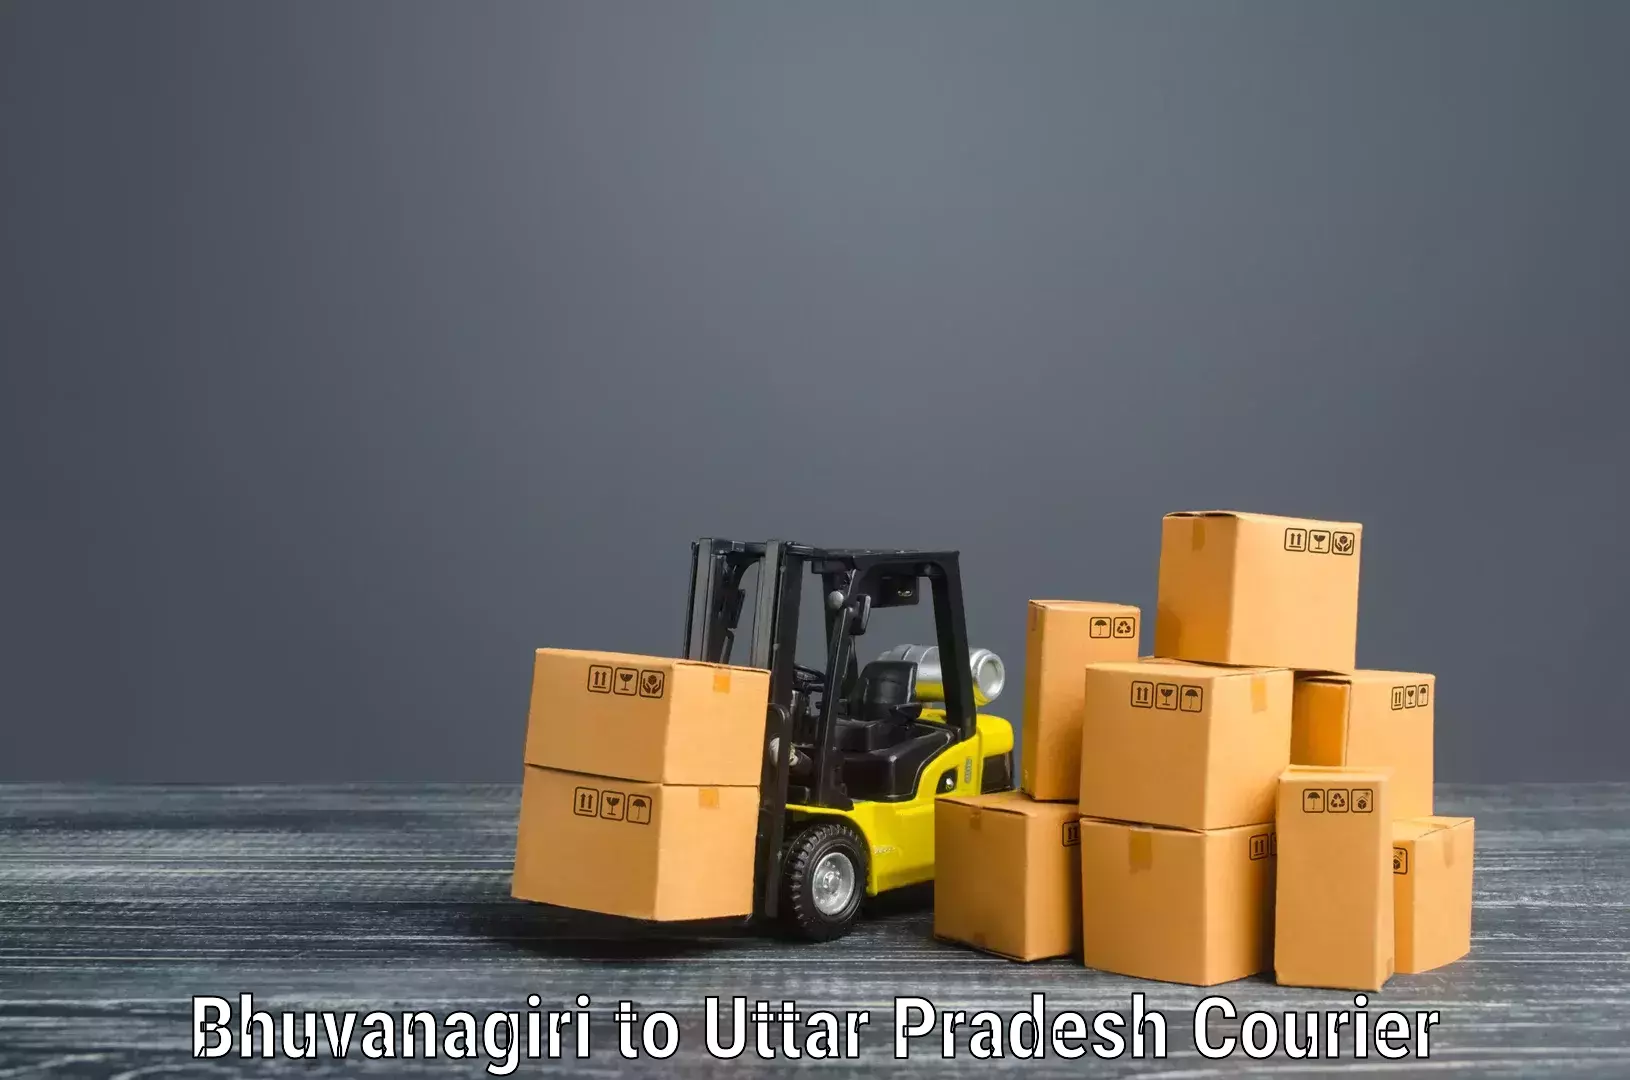 Reliable furniture transport in Bhuvanagiri to Cholapur